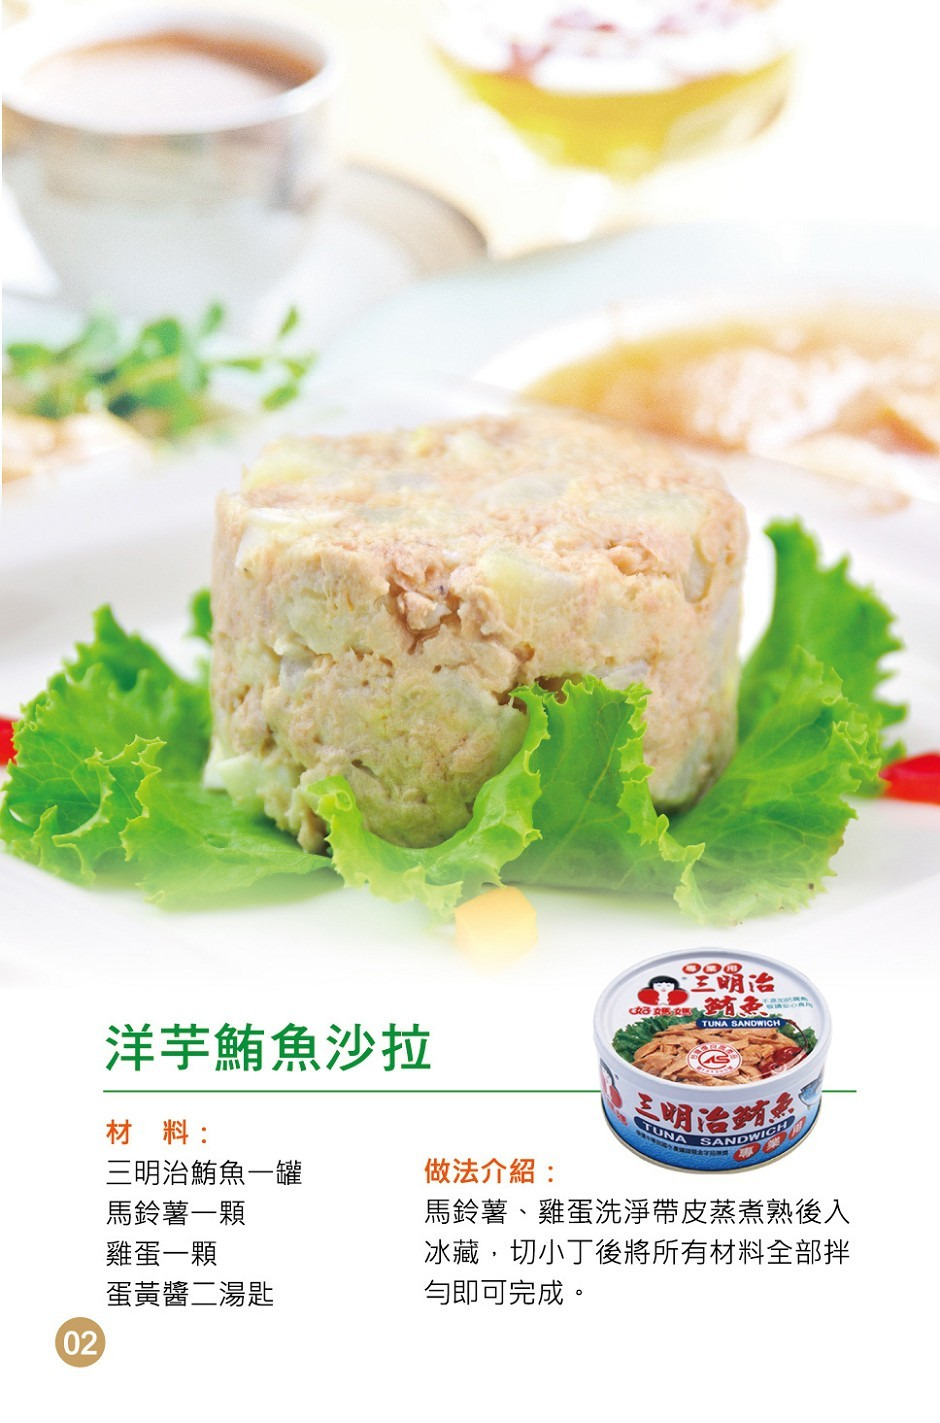 洋芋鮪魚沙拉